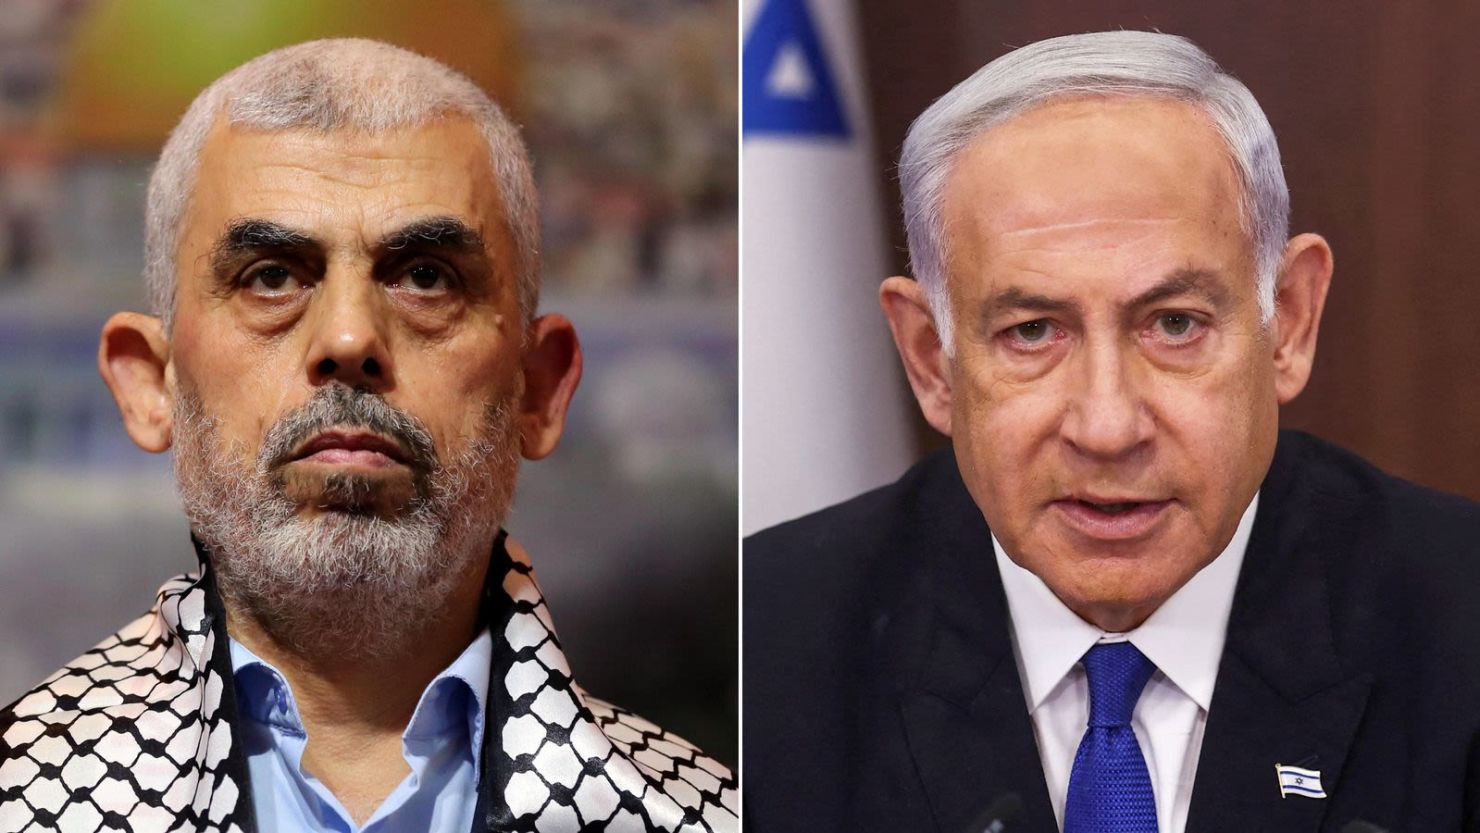 Hamas leader Yahya Sinwar and Israeli Prime Minister Benjamin Netanyahu.